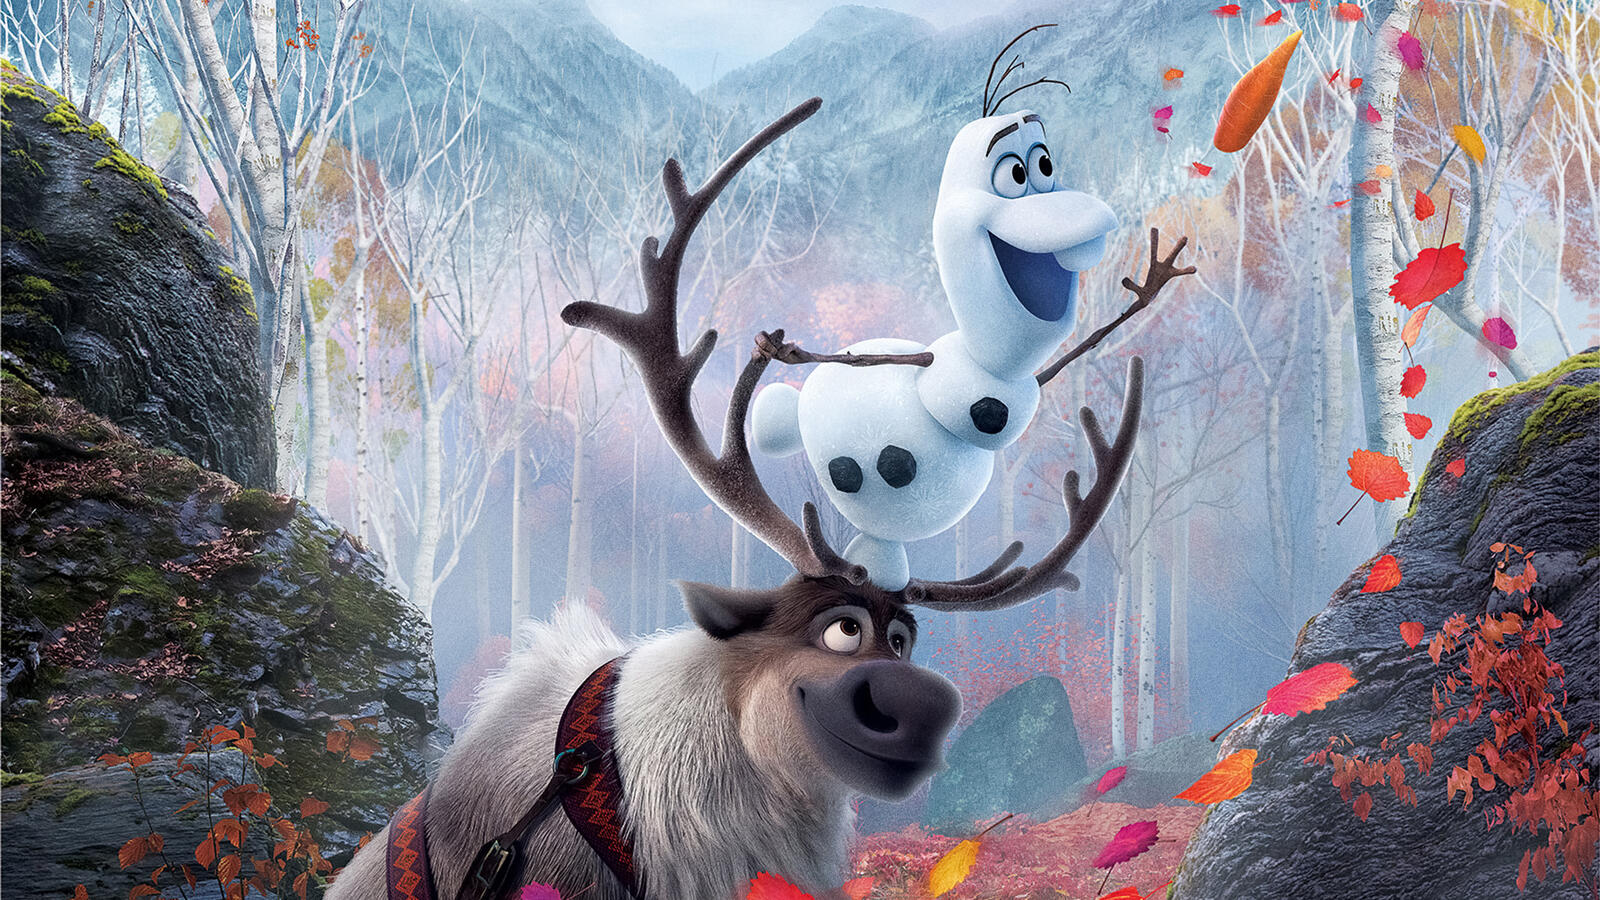 Wallpapers 2019 Movies Frozen 2 disney on the desktop